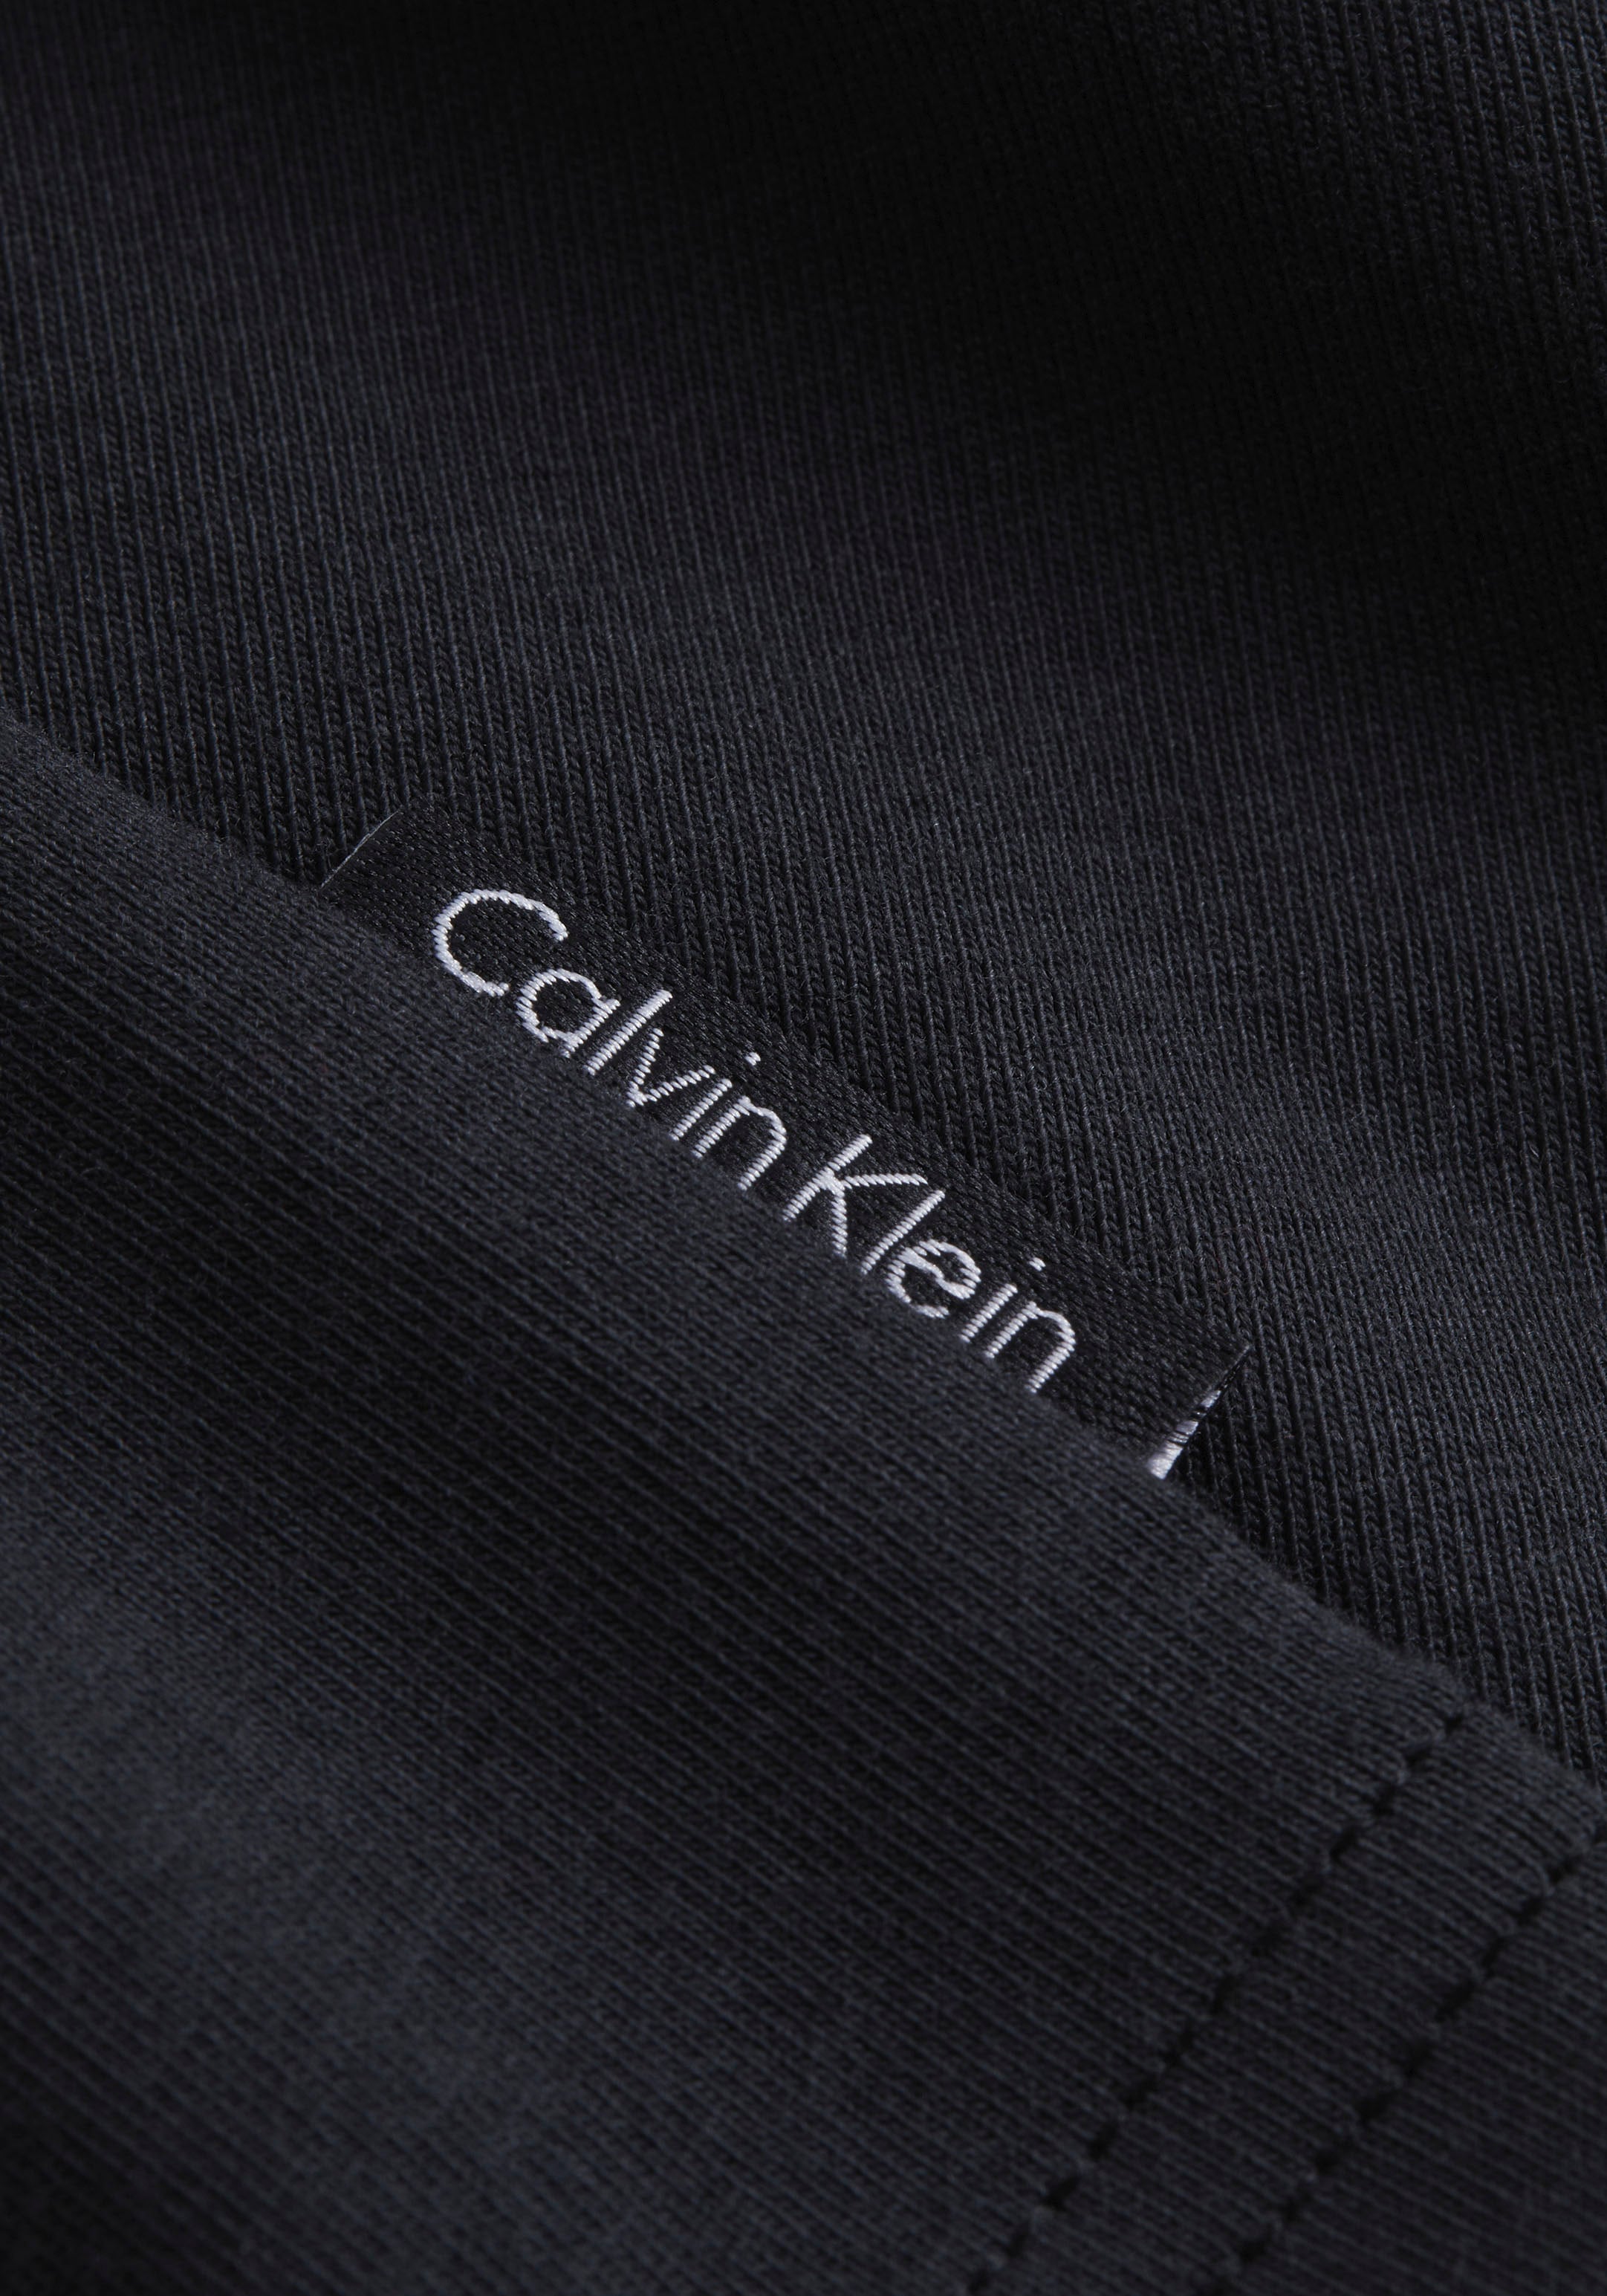 Calvin Klein Underwear Schlafanzug »S/S BOXER SET«, mit kurzen Ärmeln